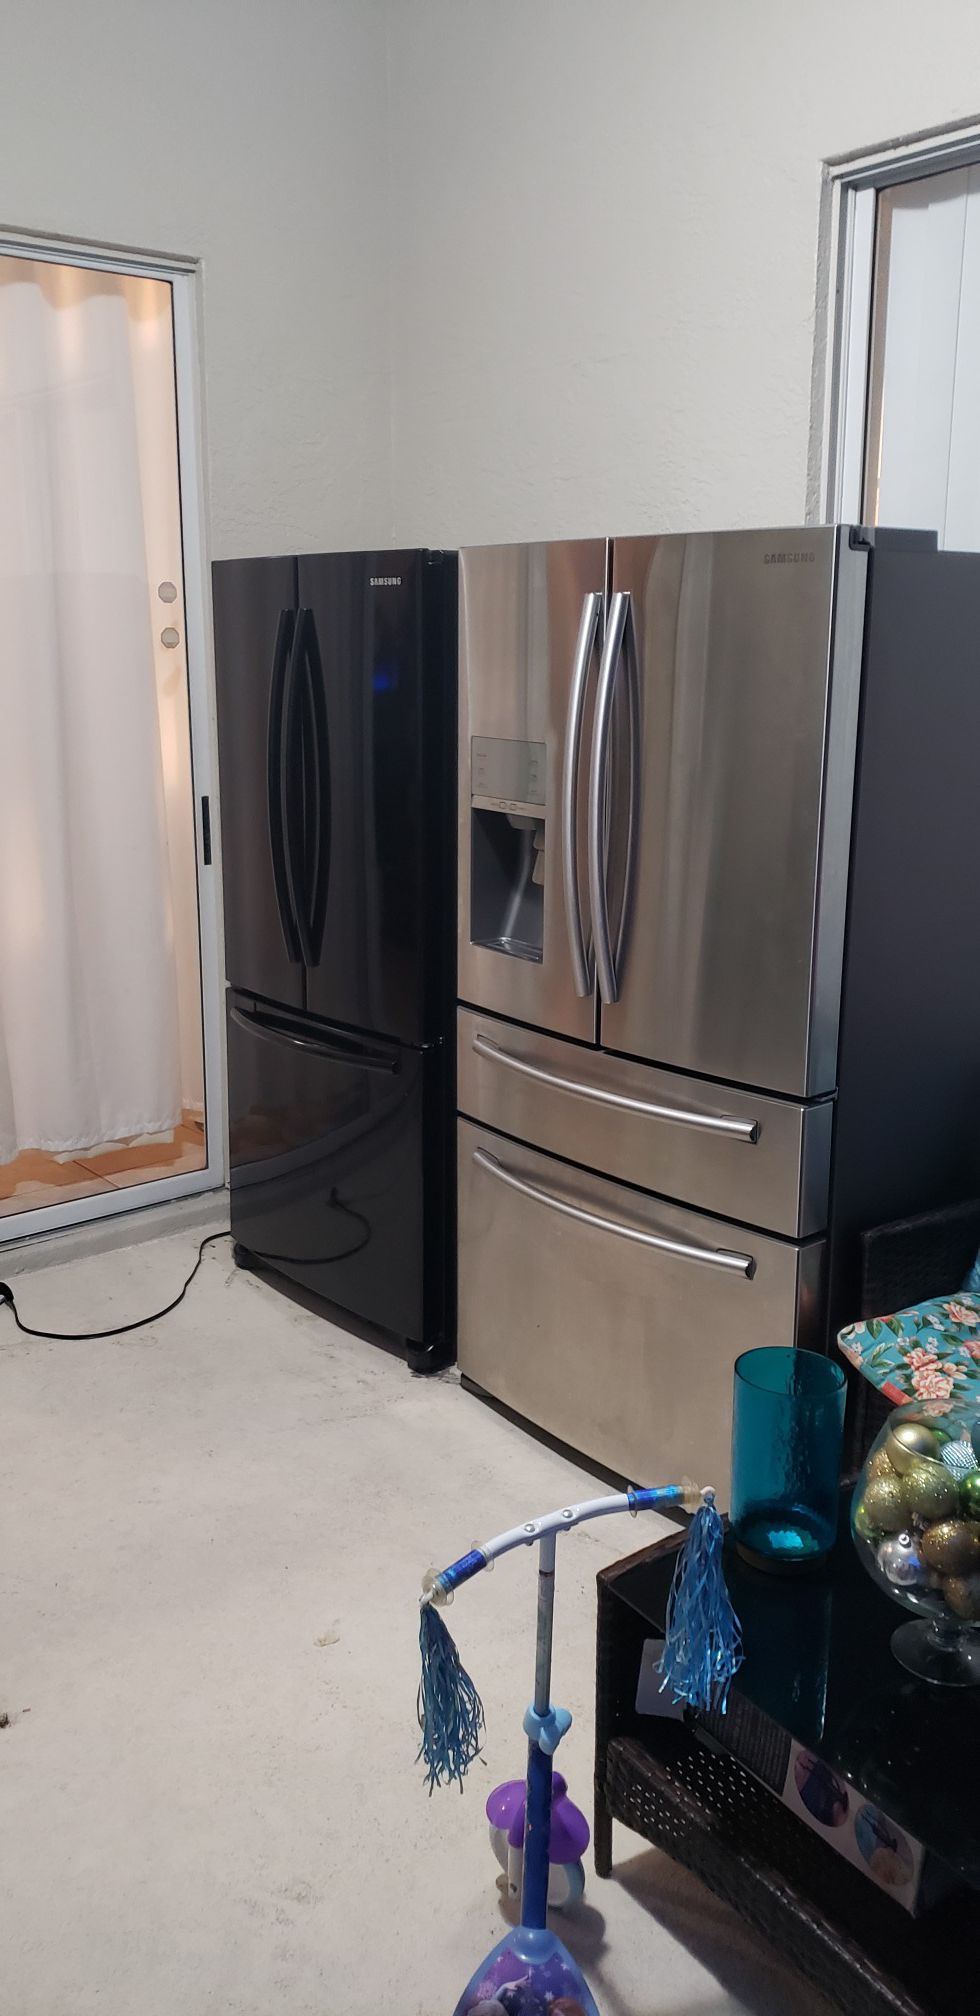 Samsung refrigerator French door 4 door nevra